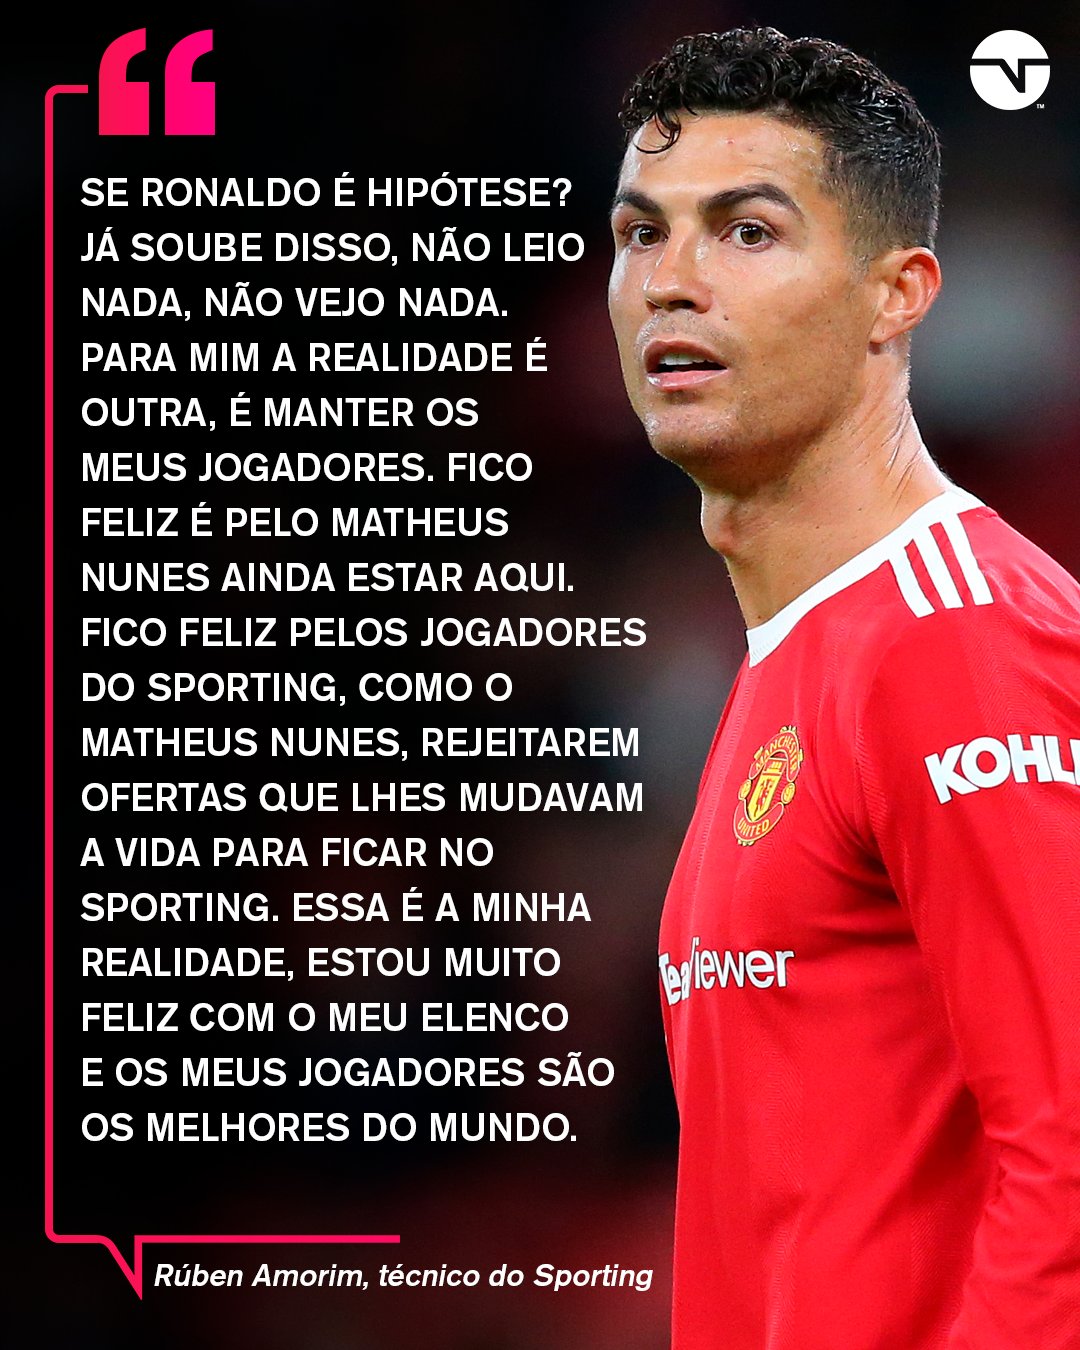 TNT Sports BR on X: DIZEM QUE O CARA É INDIVIDUALISTA 👀 Cristiano deu o  recado sobre Portugal ainda não ter vaga na Copa. Acha que ele está certo?  O jogo de